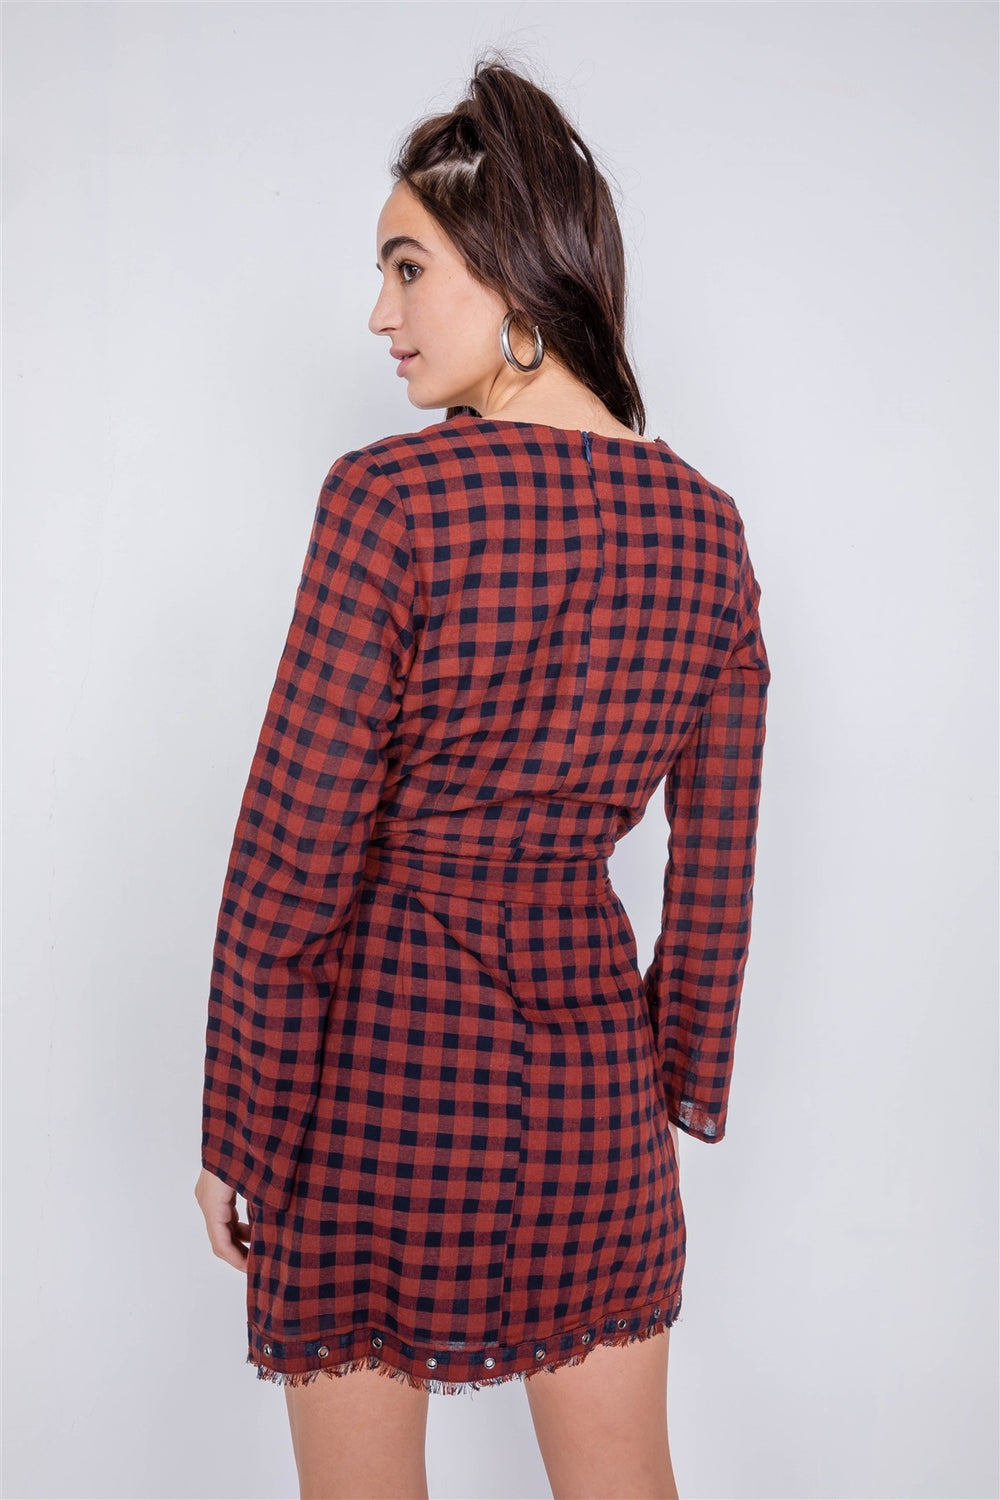 KRISTA Plaid Checkered Grommet Raw Hem Mini Dress